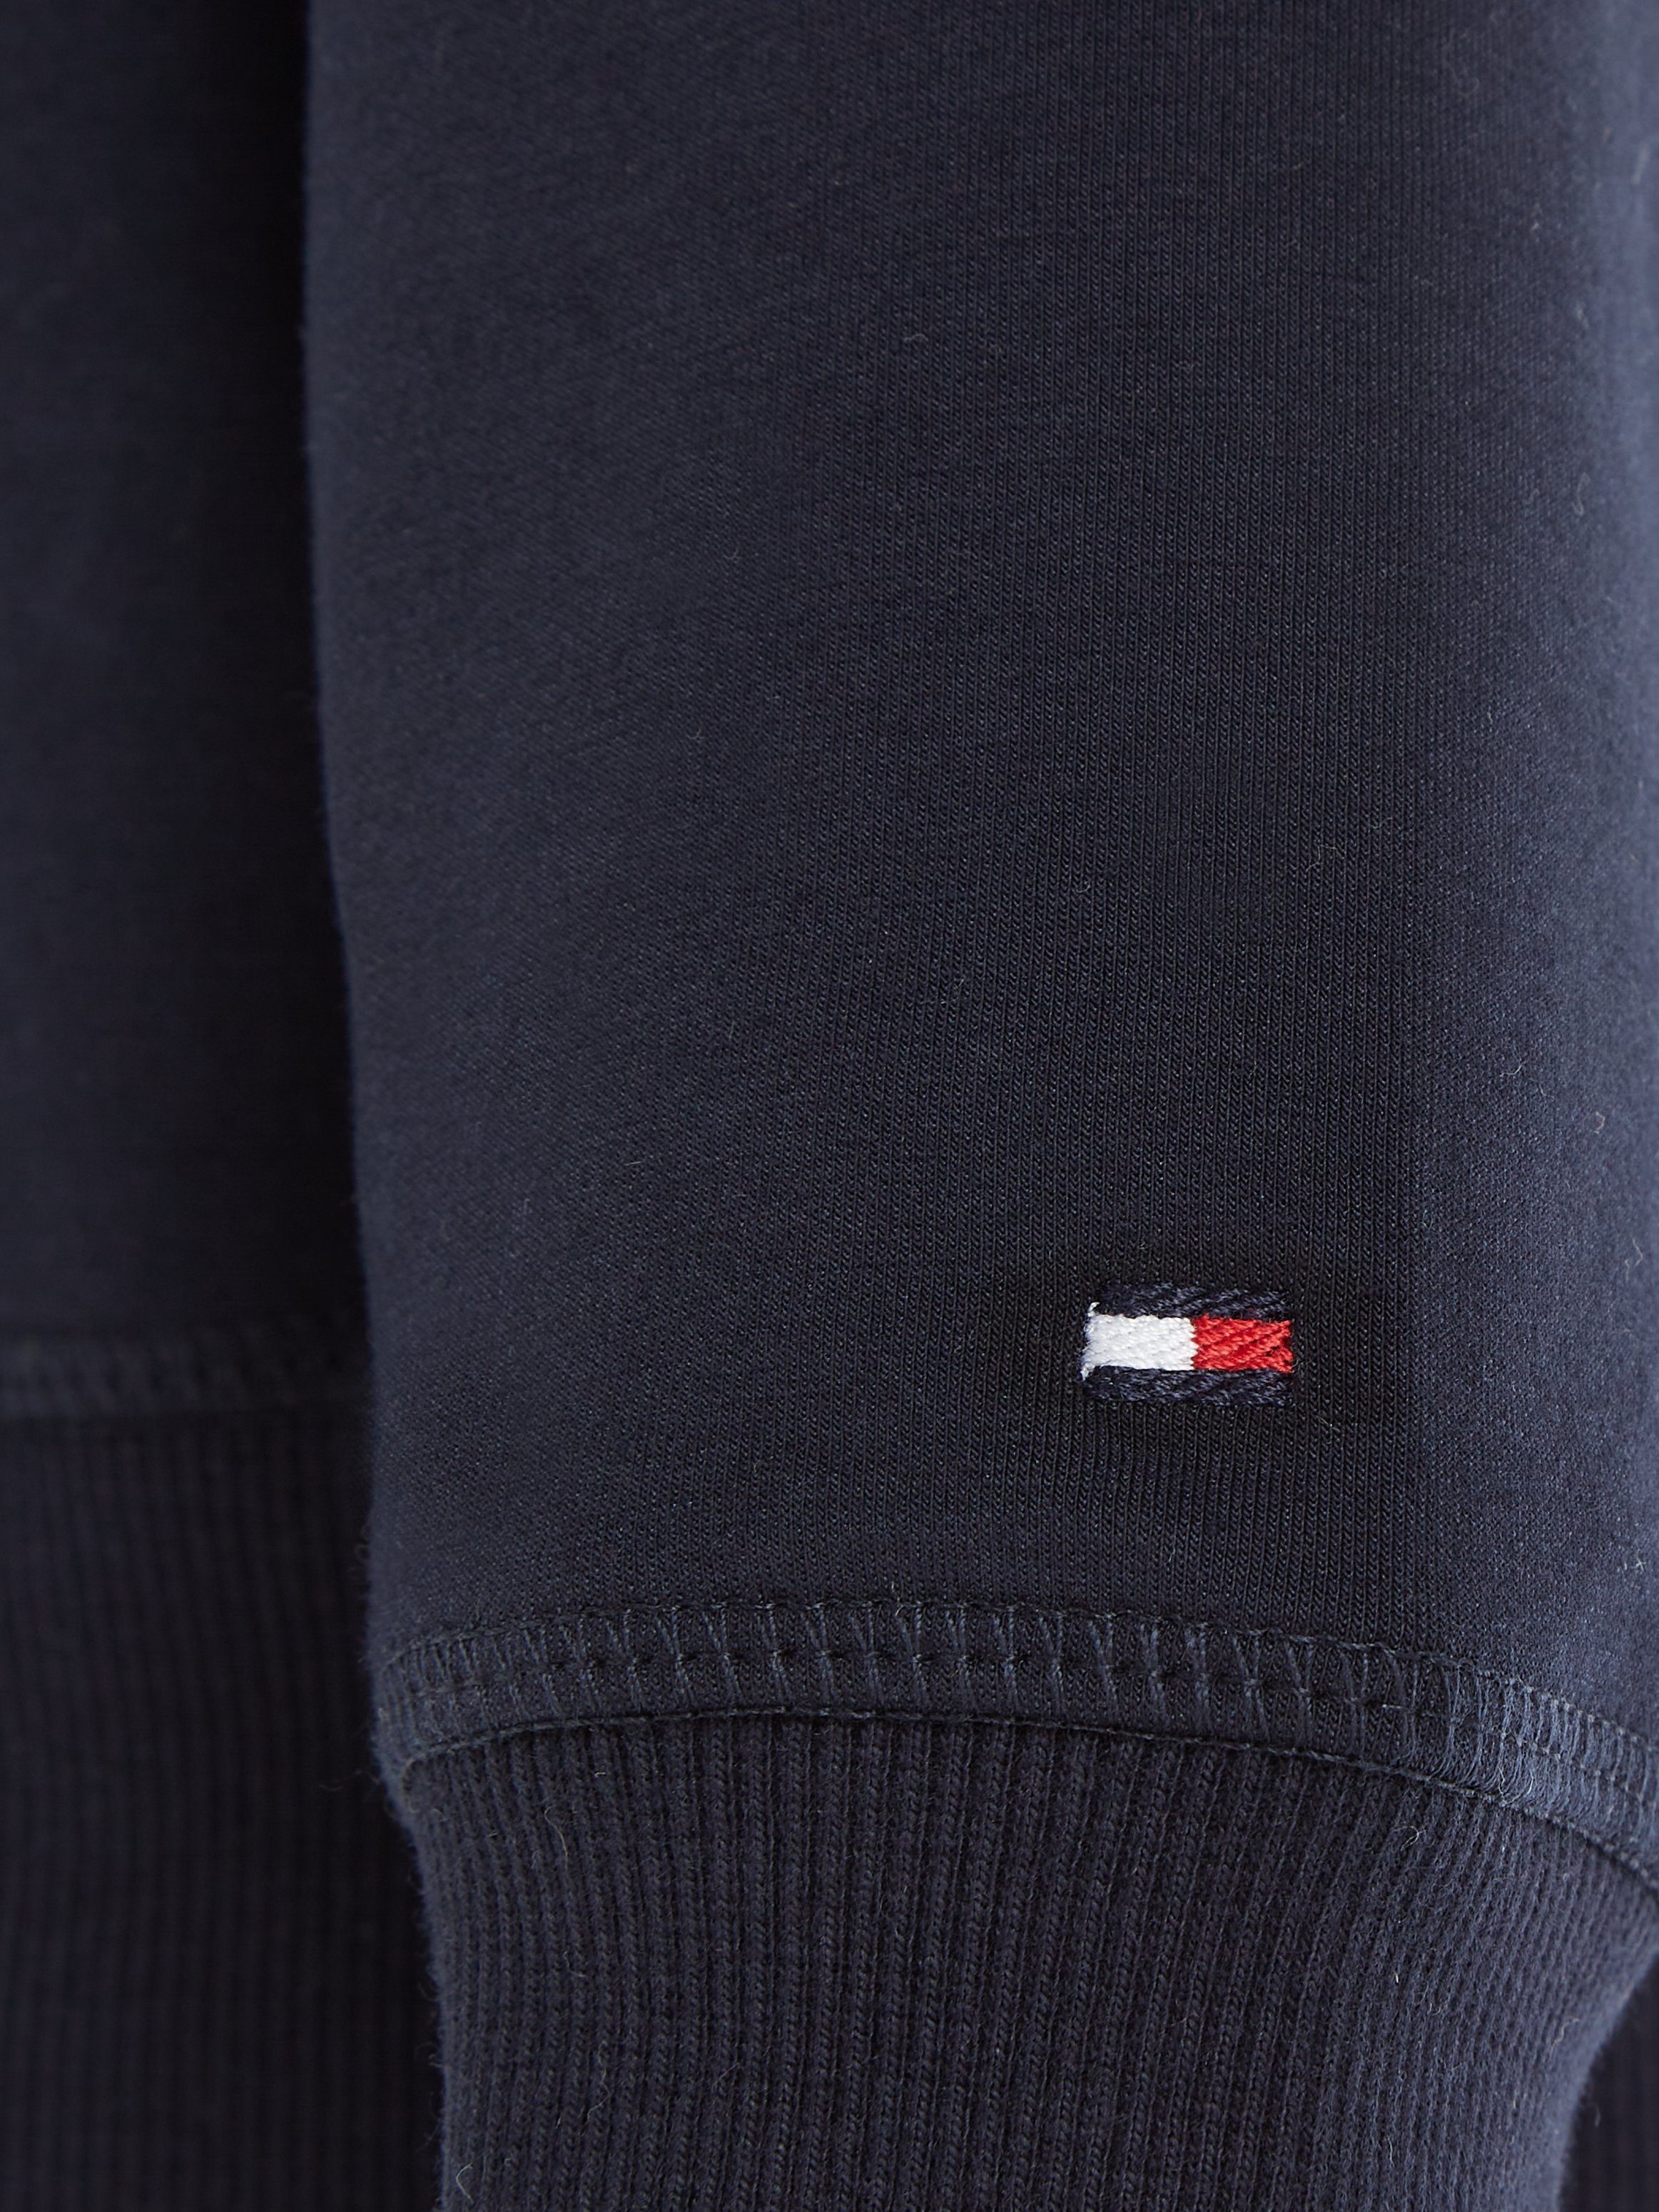 Karodessin MONOTYPE im markantem Hilfiger Hilfiger mit BOLD SWEATSHIRT Sweatshirt Tommy Logo-Schriftzug